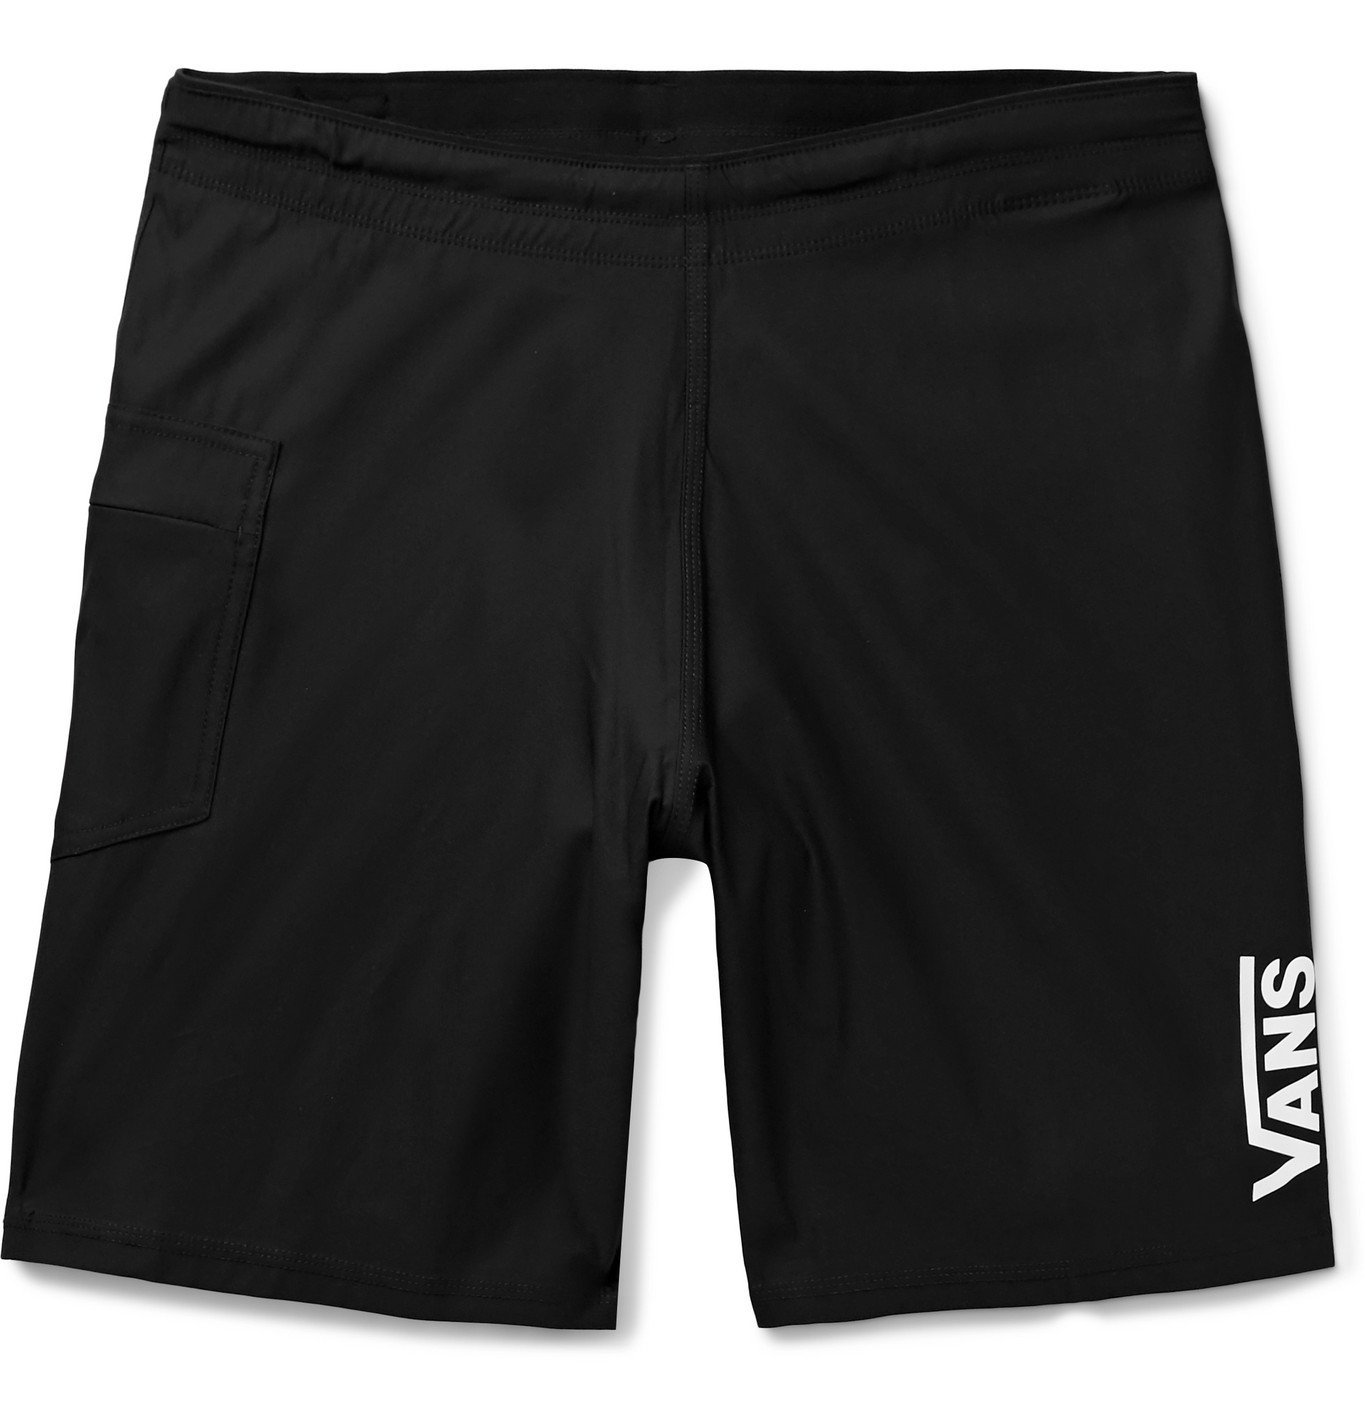 Buy > vans grey shorts > in stock